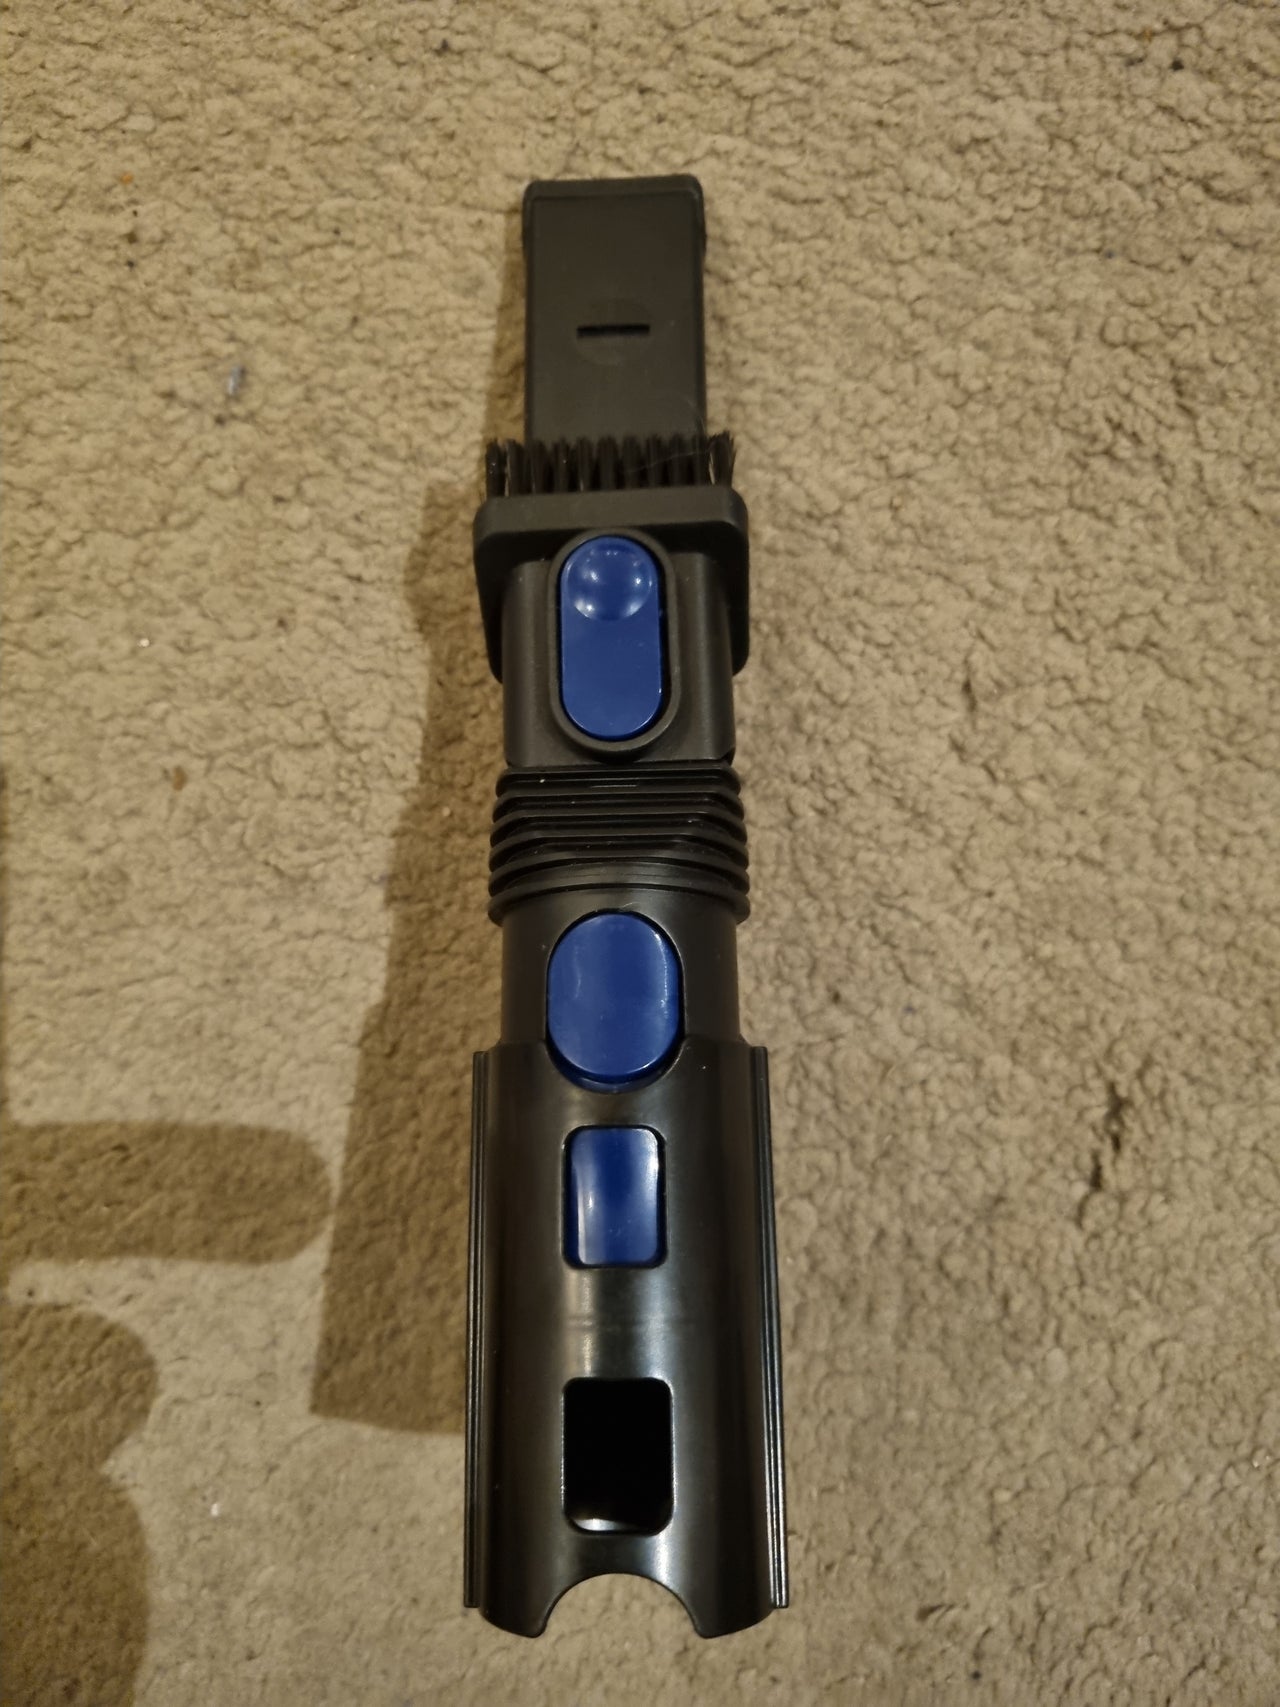 Small brush Ariko handle vacuum cleaner